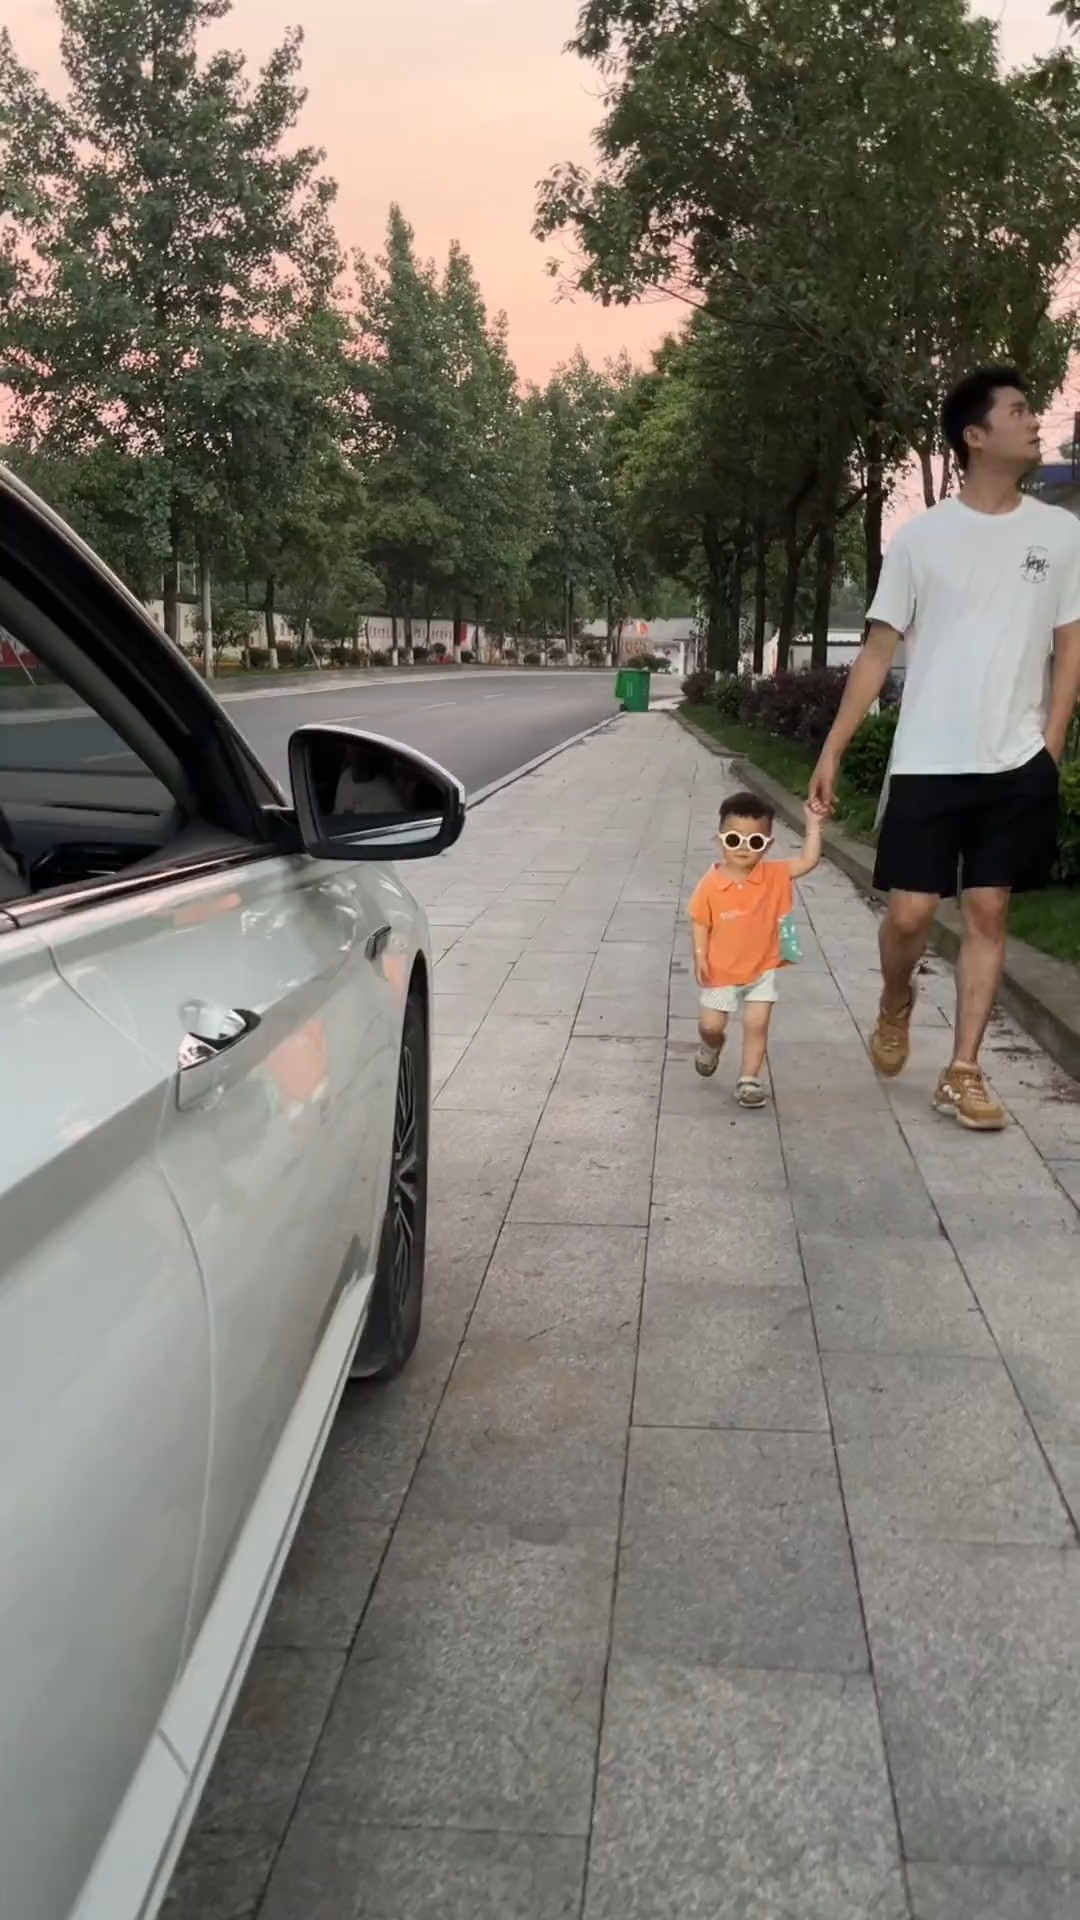  噗噗跟爸爸在外面散步，遇到一个车主乱扔垃圾，宝宝的举动惊呆了爸爸